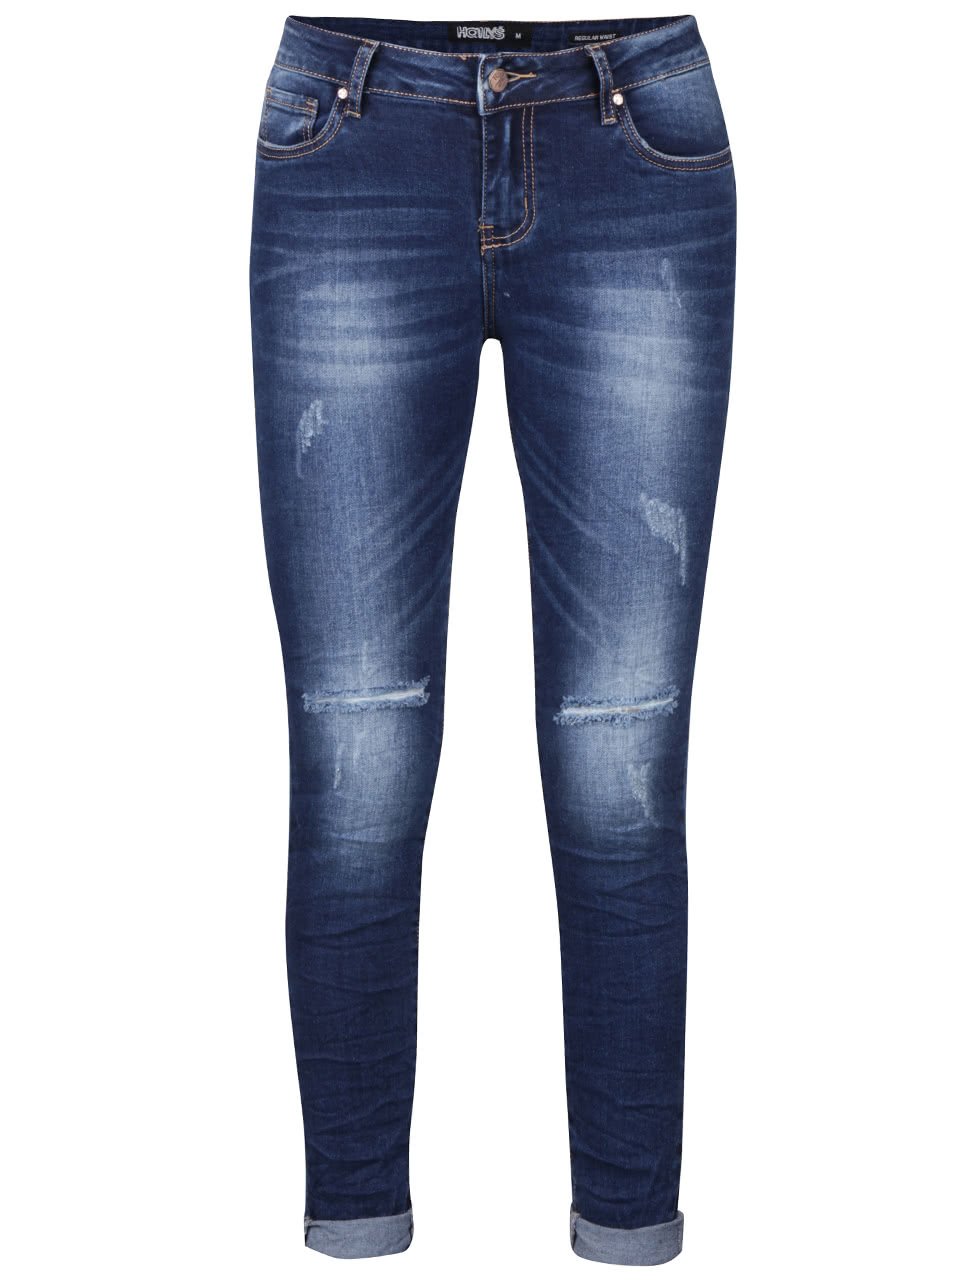 Tmavě modré vyšisované džíny s roztrhanými detaily Haily´s Zoe